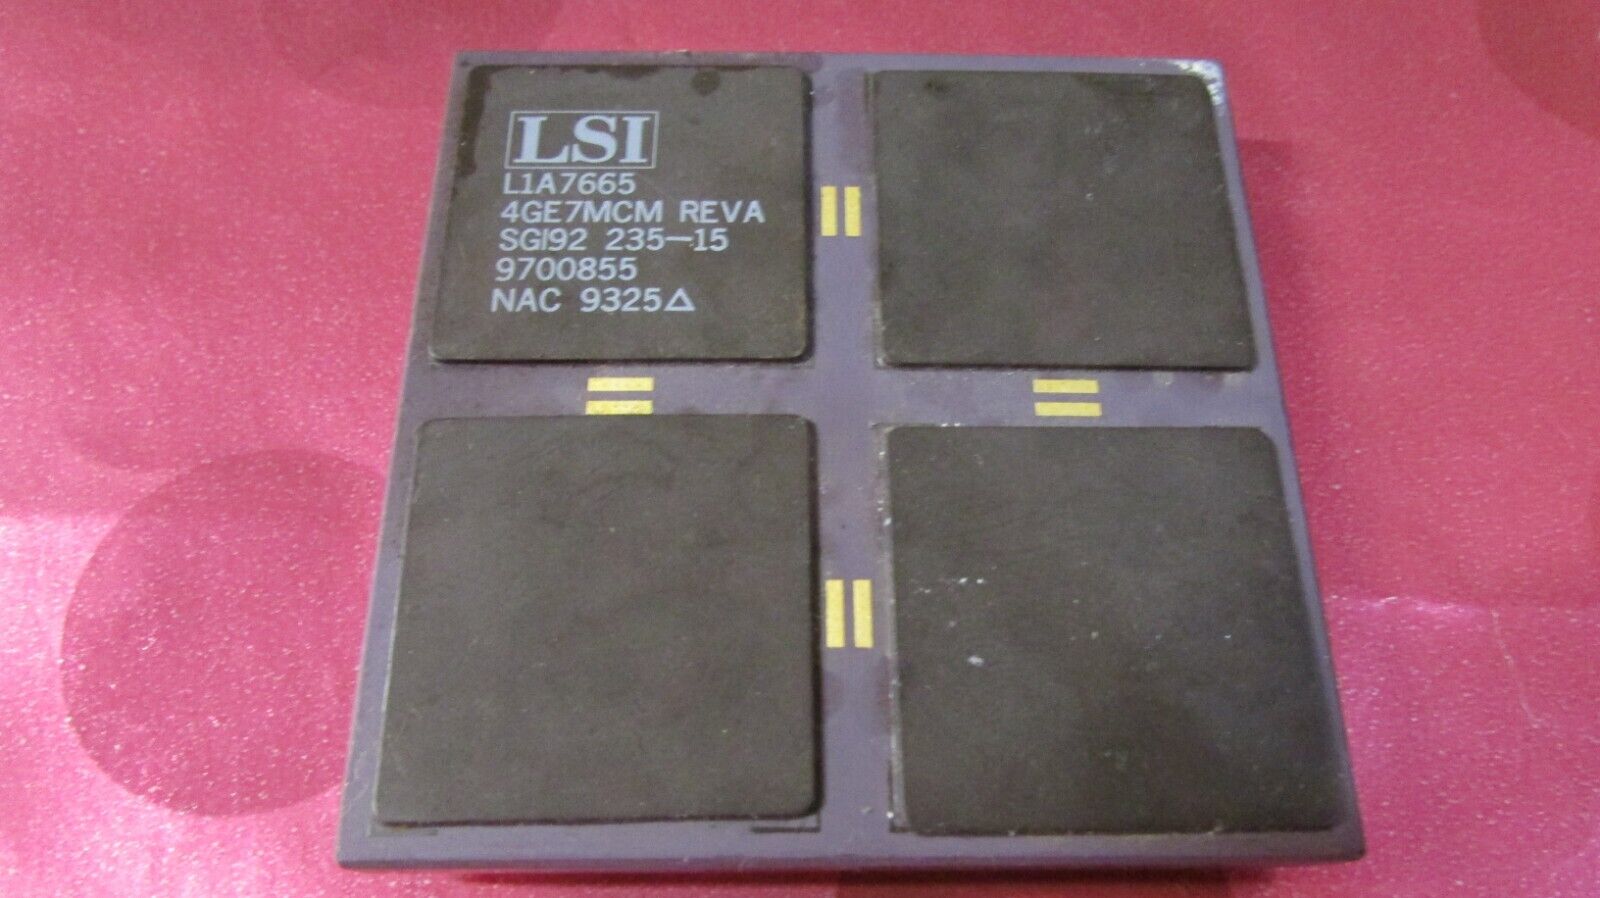 Huge LSI L1A7665 4GE7MCM Vintage TCM/CPU/Processor Ceramic/Gold-Pins No-IBM Lot1